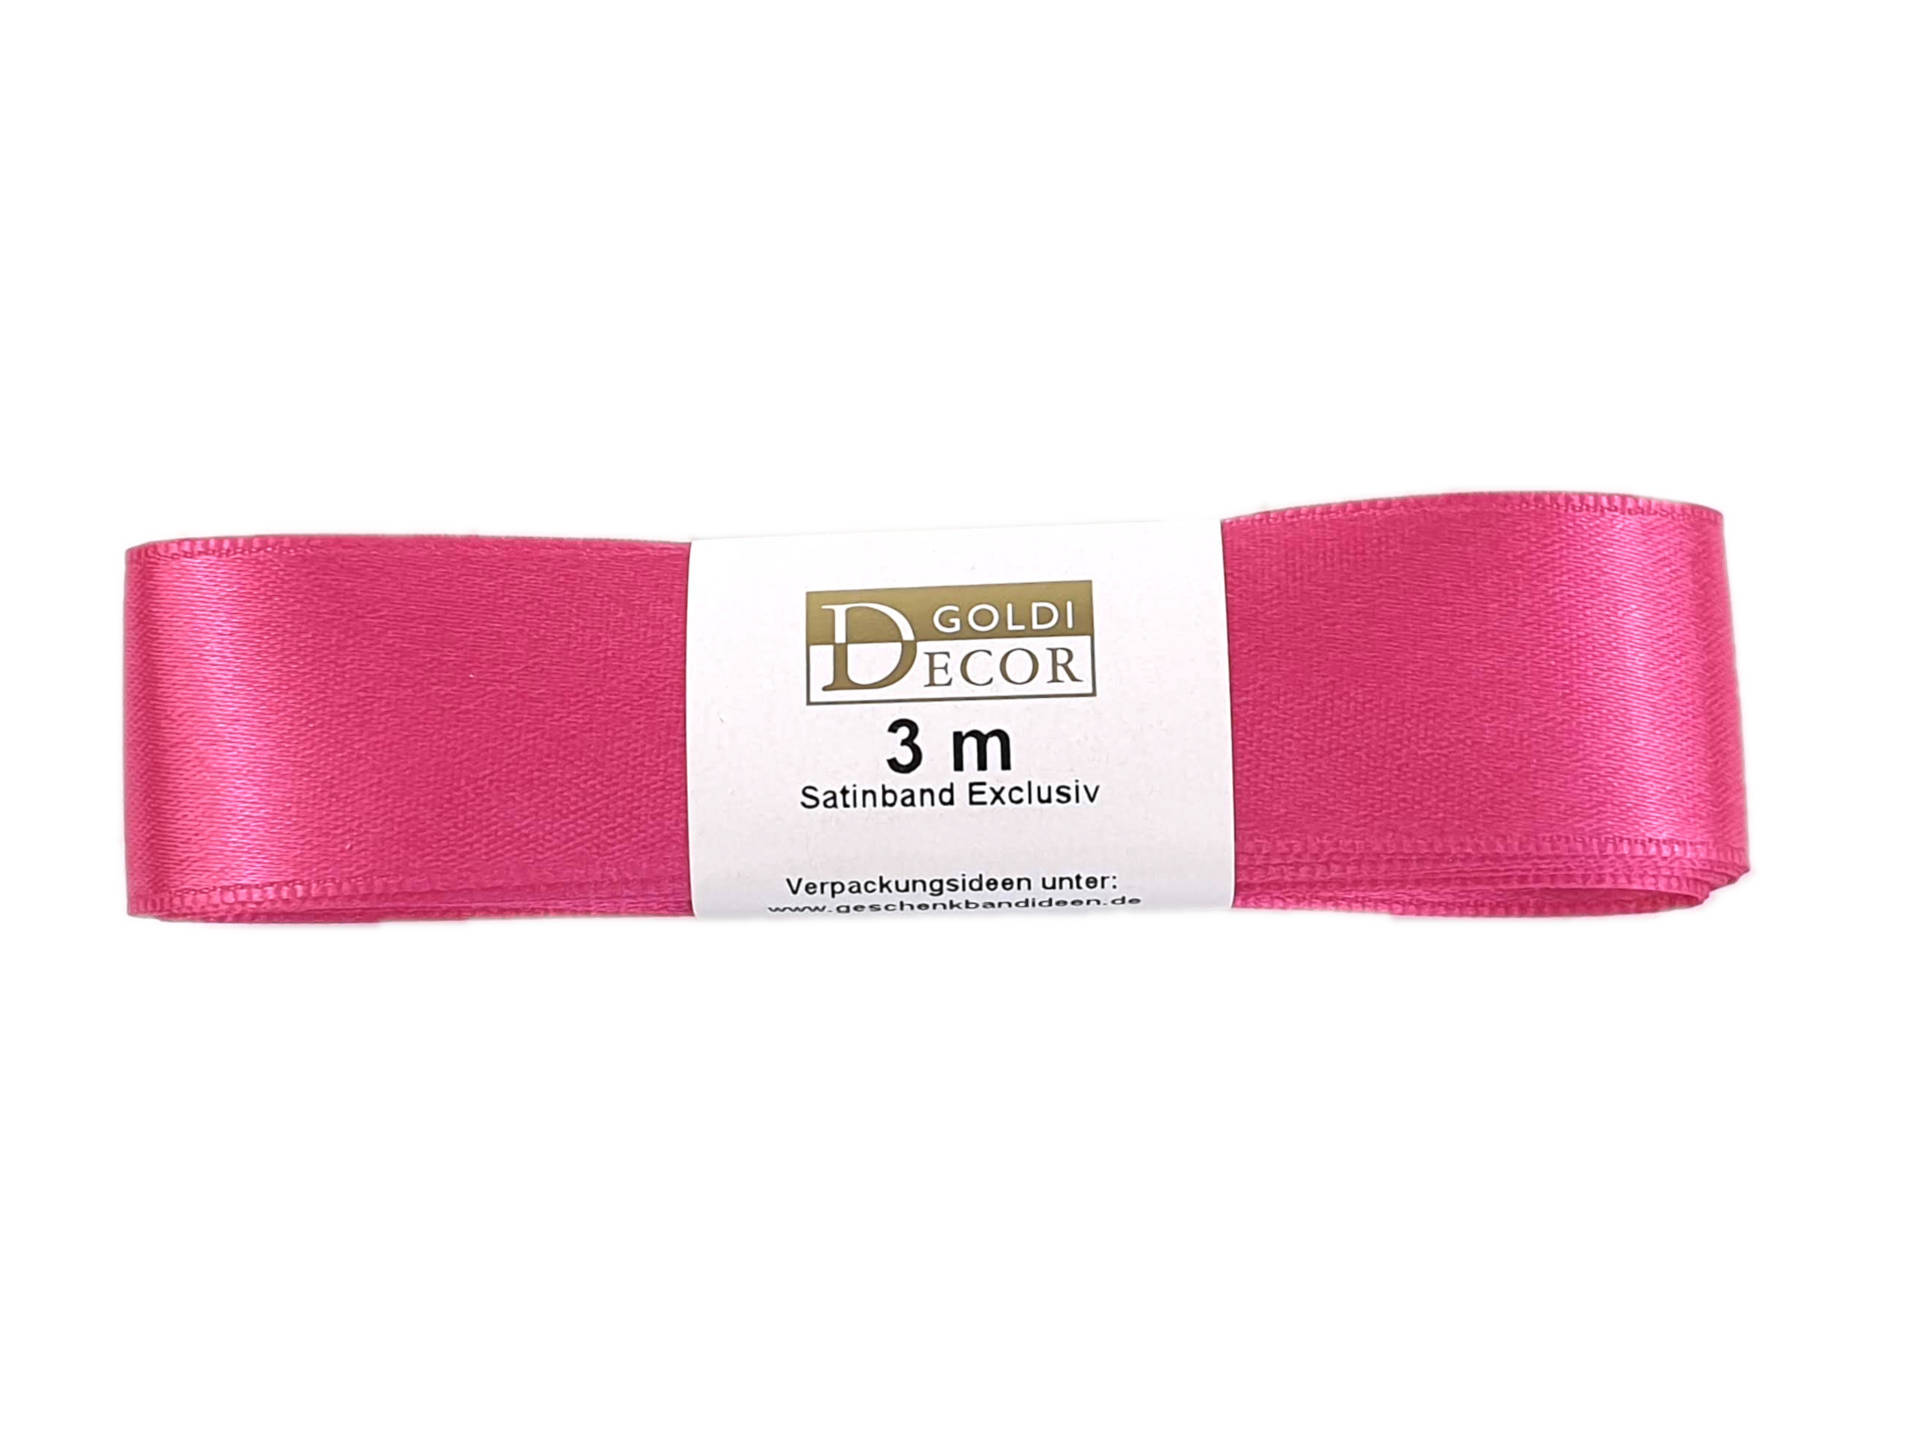 Premium-Satinband, pink, 25 mm breit, 3 m Strängchen - satinbaender, dauersortiment, satinband, premium-qualitat